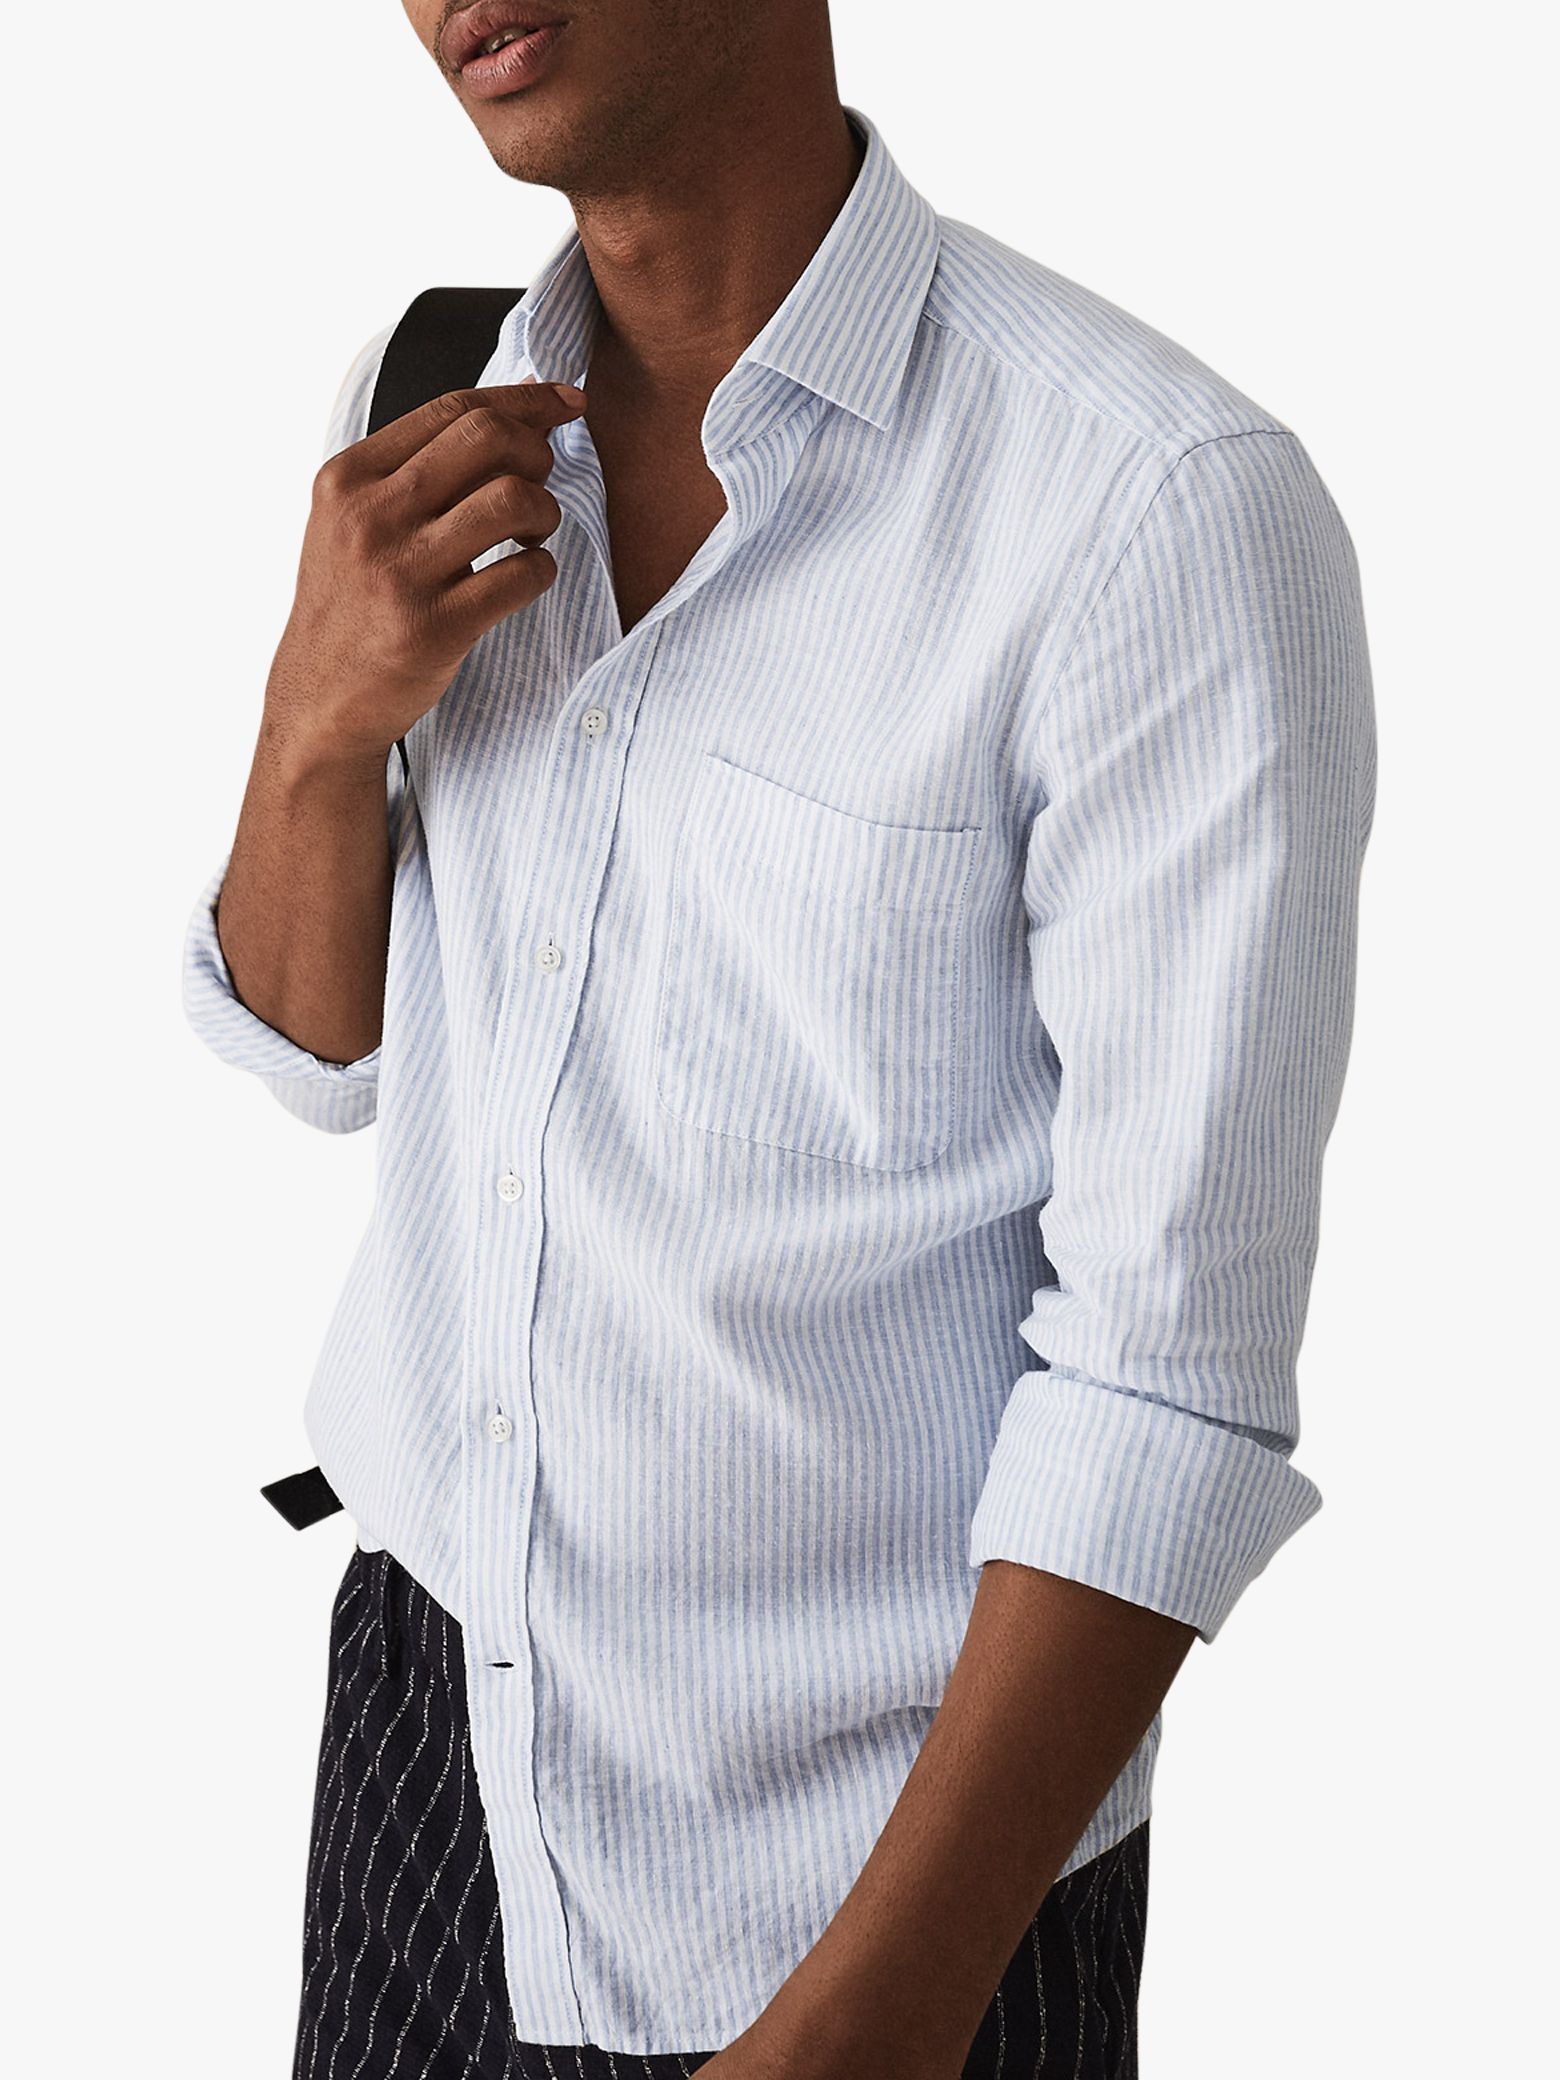 Reiss Long Sleeve Stripe Linen Blend Shirt, White at John Lewis & Partners